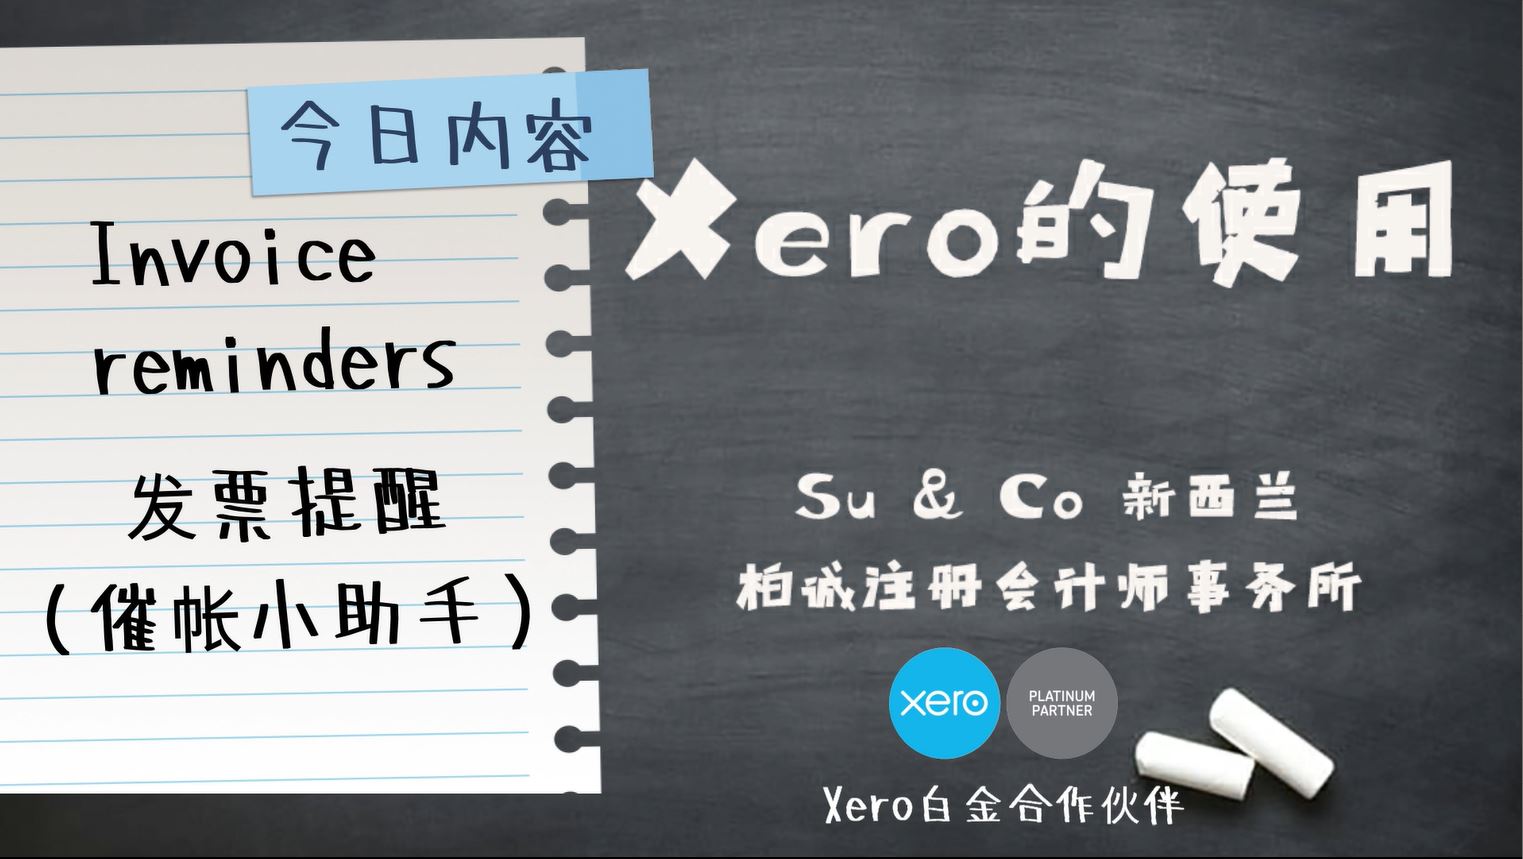 Xero的使用教程 - Invoice reminders 发票提醒（催帐小助手）